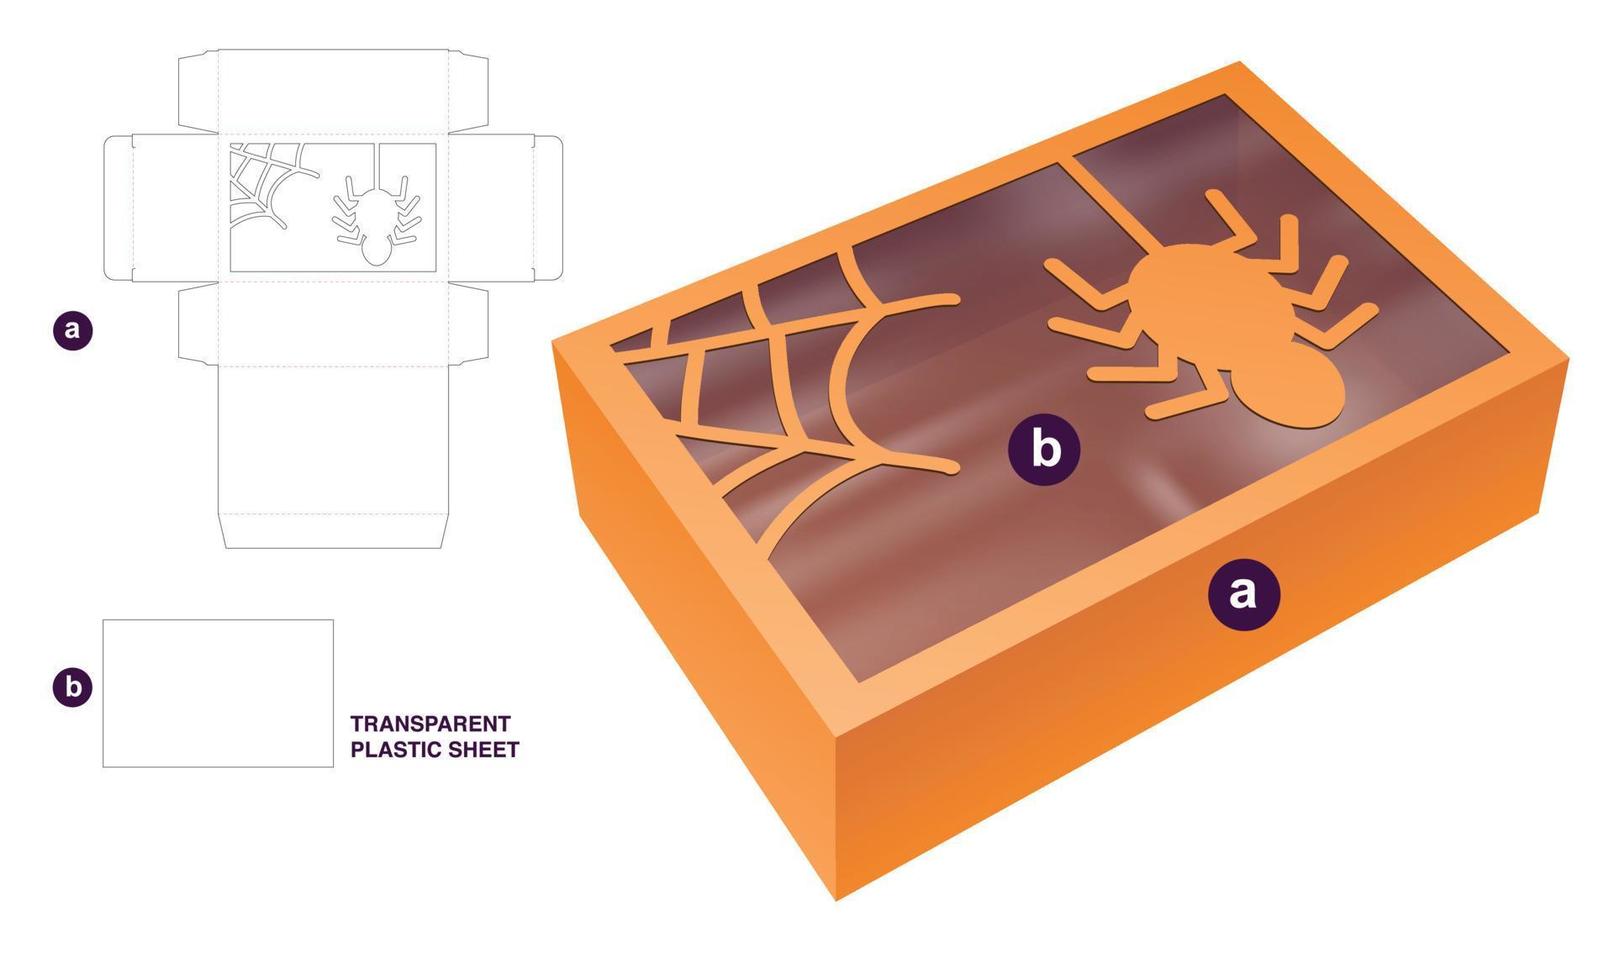 låda och halloween fönster med transparent plast ark dö skära mall och 3d attrapp vektor